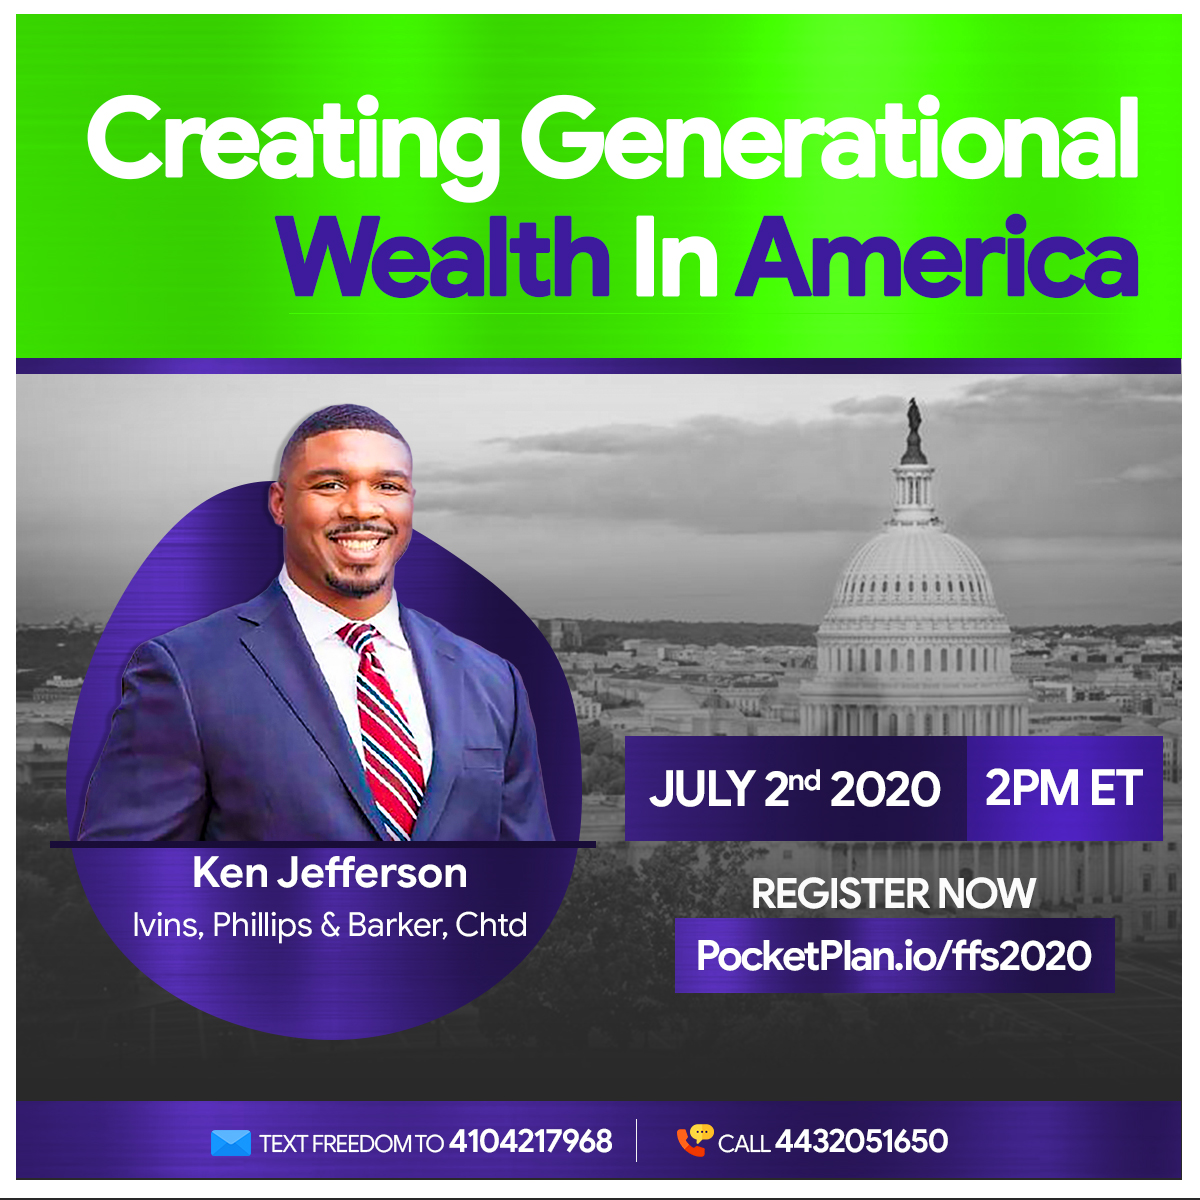 Create Generational Wealth in America with Ken Jefferson